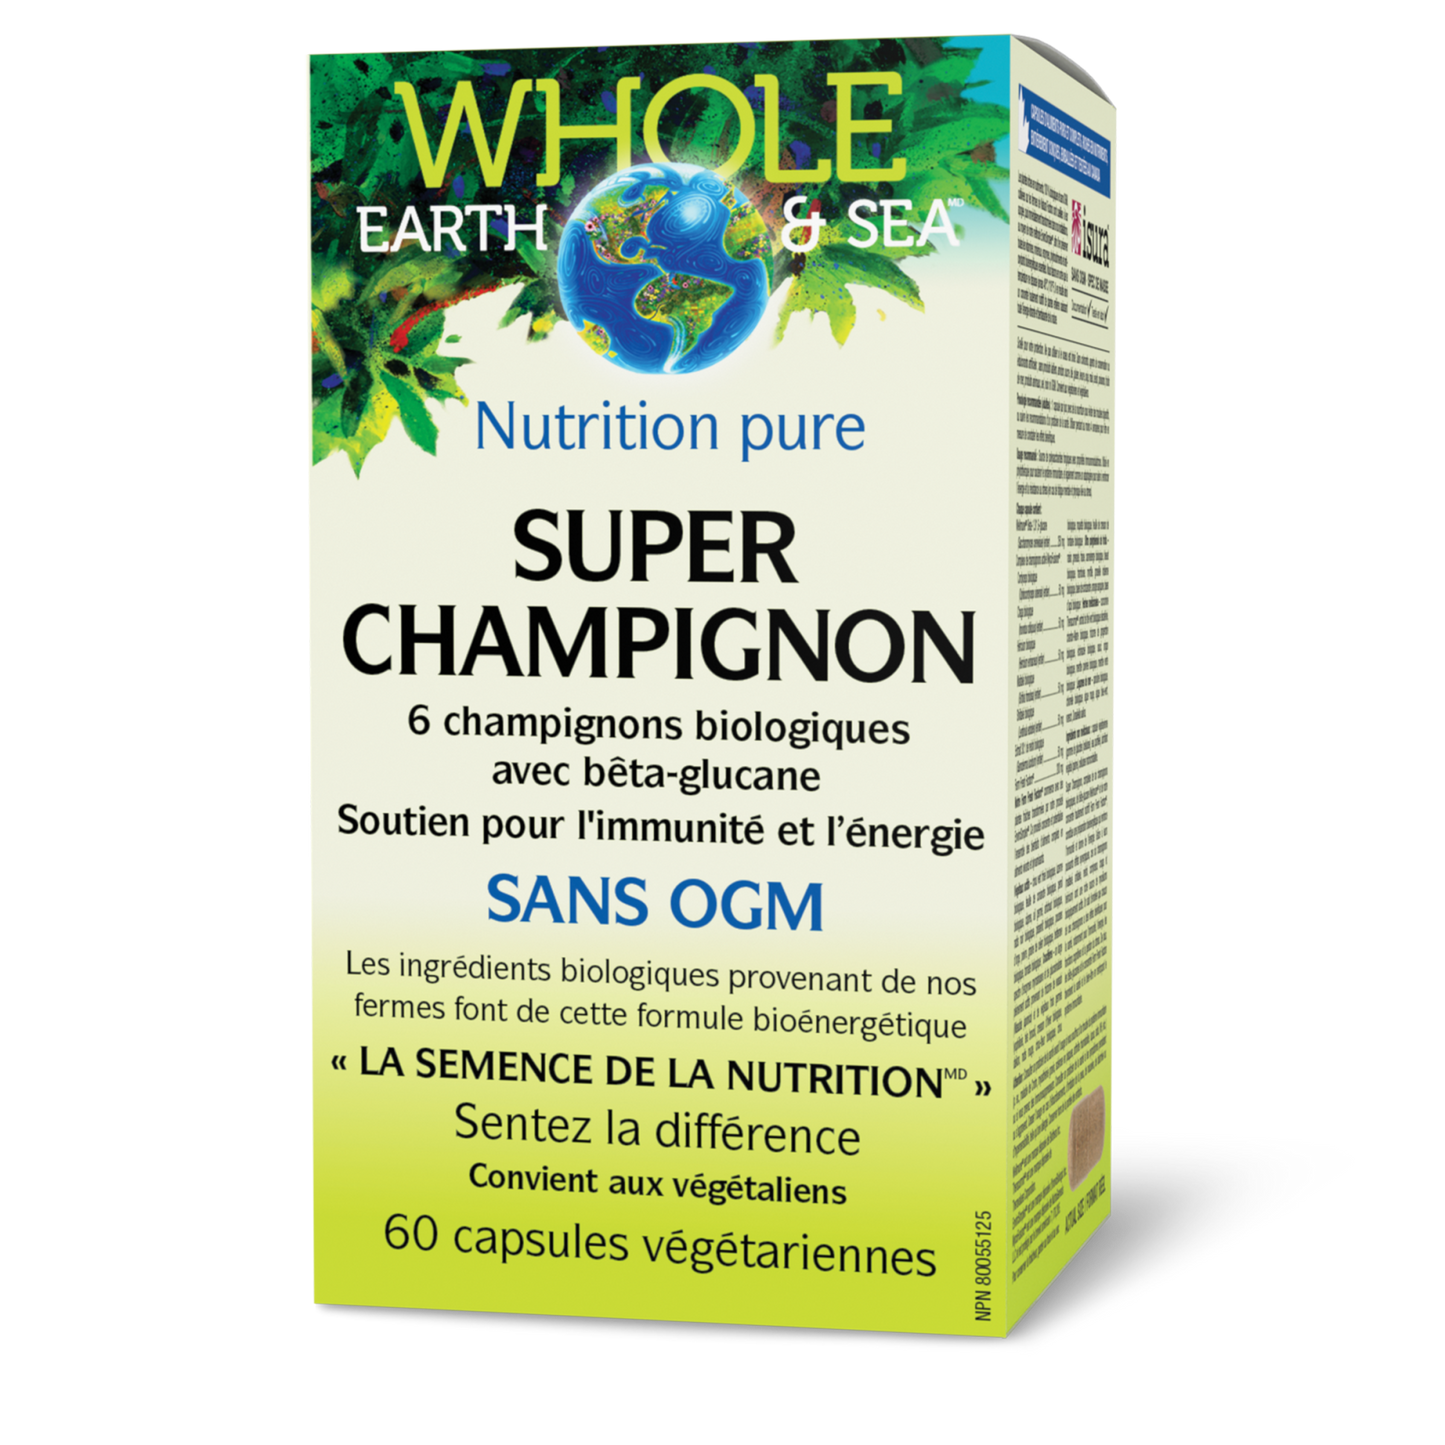 Super champignon, Whole Earth & Sea, Whole Earth & Sea®|v|image|35510